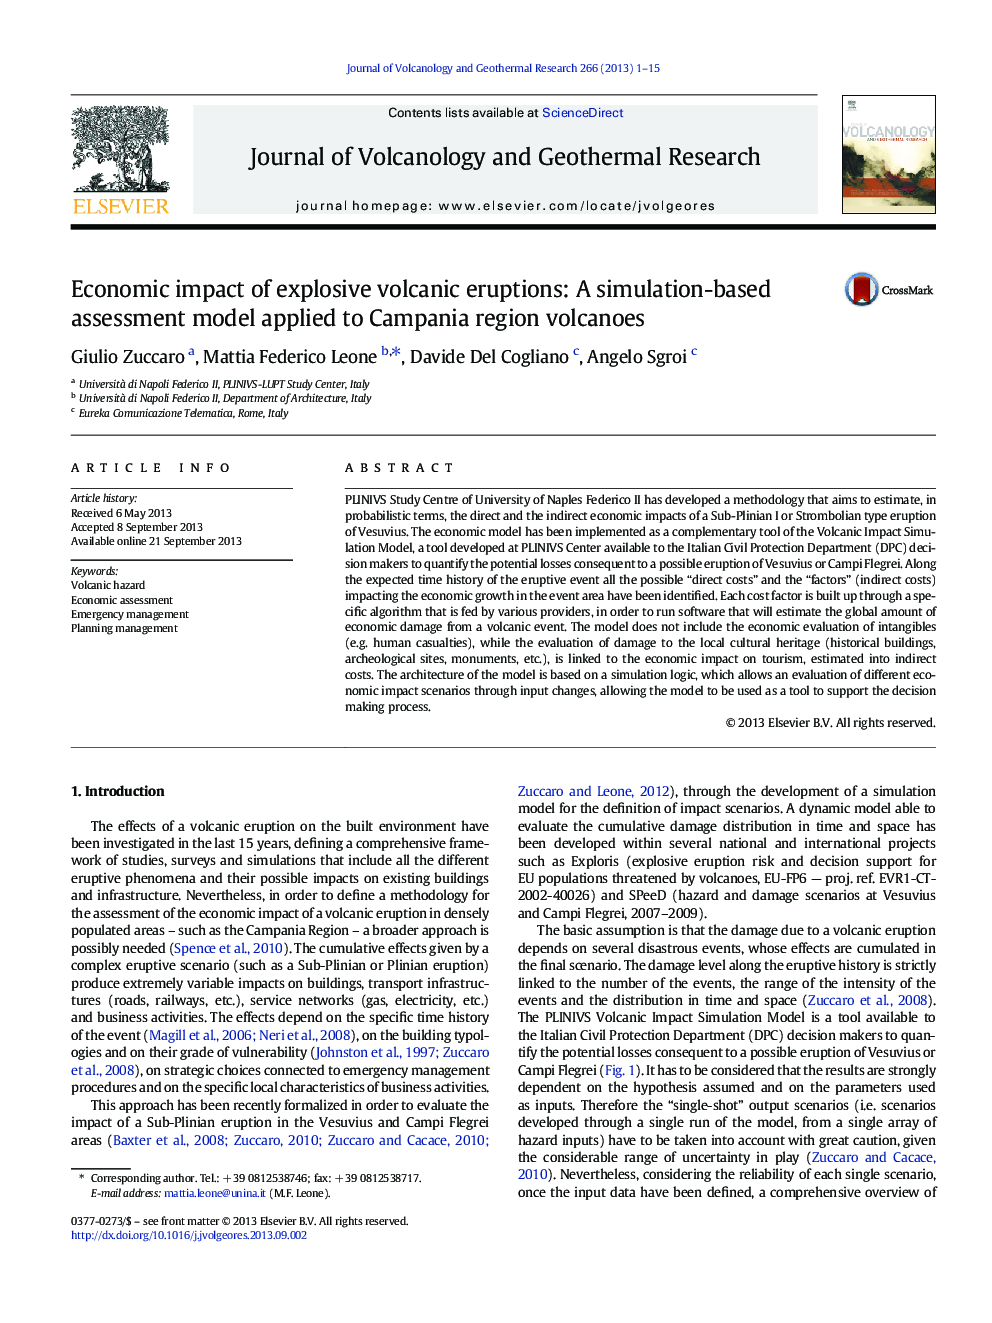 تأثیر اقتصادی فوران های آتشفشانی انفجاری: یک مدل ارزیابی مبتنی بر شبیه سازی برای آتشفشان های منطقه کامپانیا 